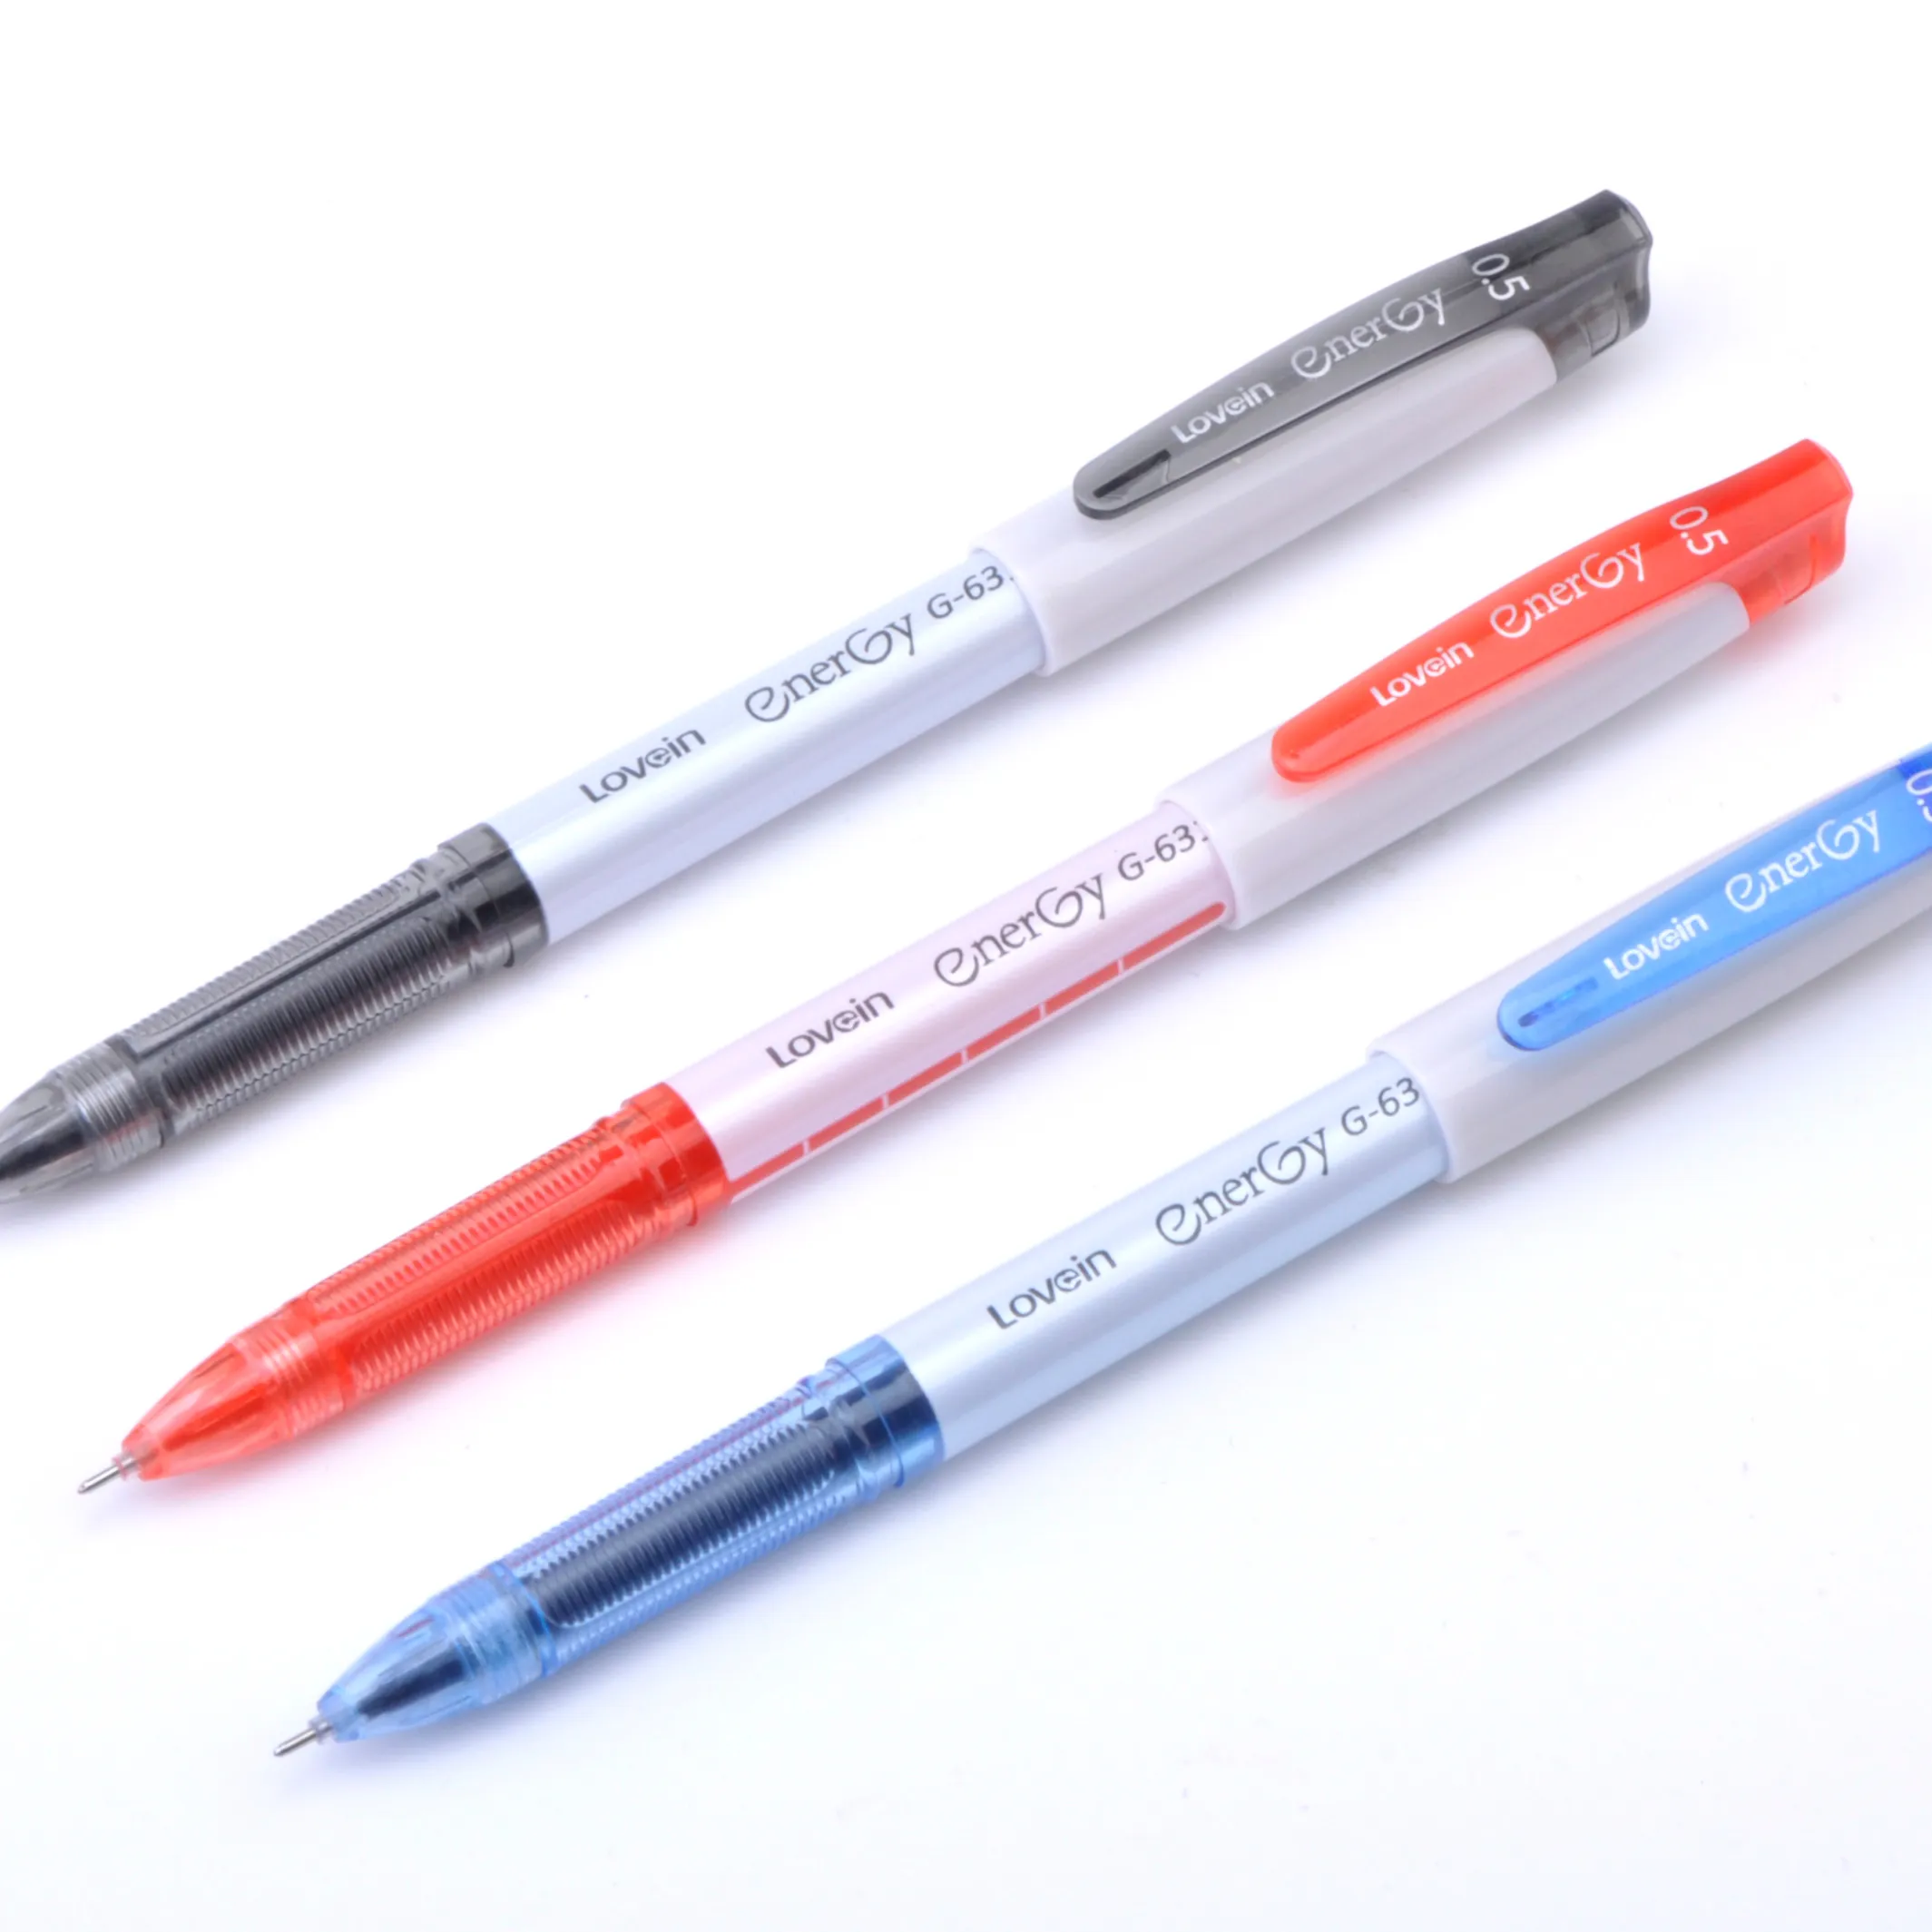 Yeni tasarım 0.5mm sıcak satış plastik jel kalem en iyi fiyat promosyon jel kalem imza kalem